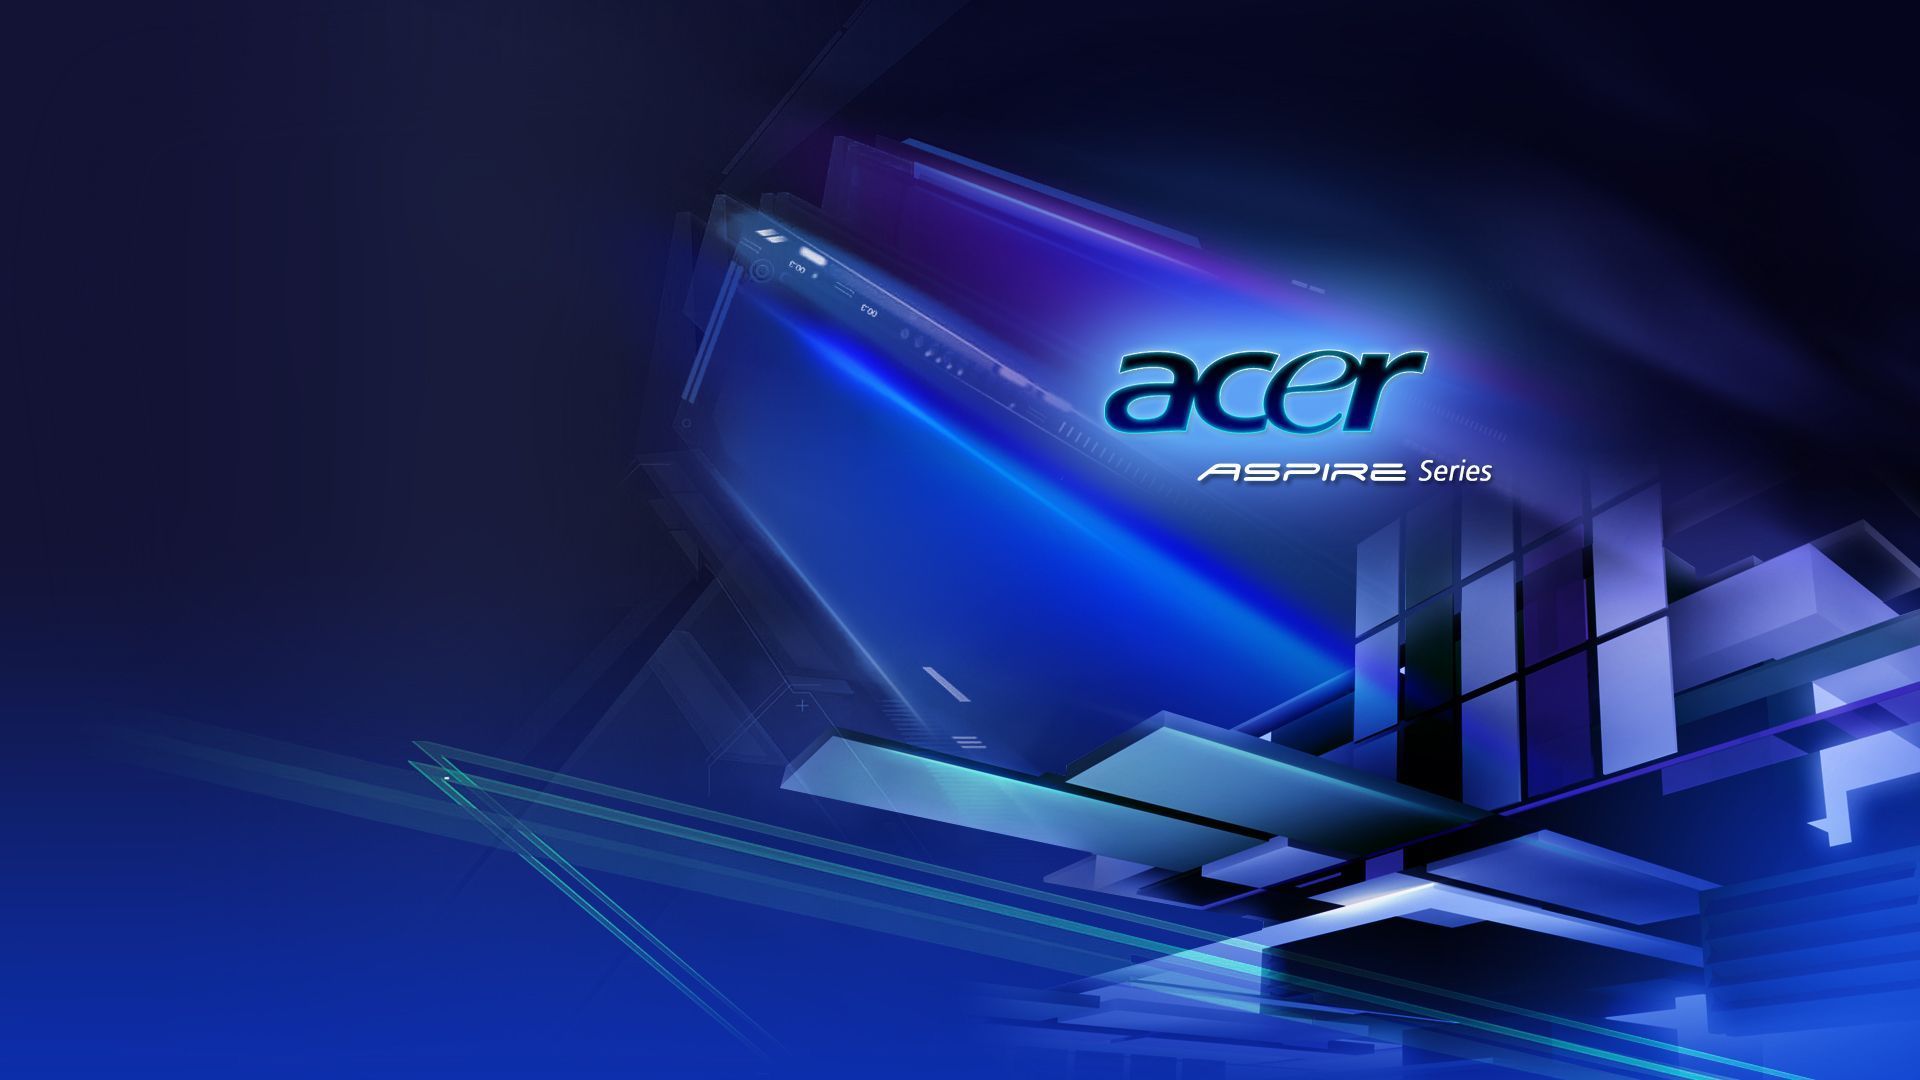 Hình nền Acer Logo miễn phí: Hãy tải ngay hình nền Acer Logo miễn phí để giúp laptop của bạn trở nên đặc biệt và mới mẻ hơn bao giờ hết. Đây là cách tuyệt vời để trang trí màn hình của mình với một trong những thương hiệu laptop hàng đầu thế giới.